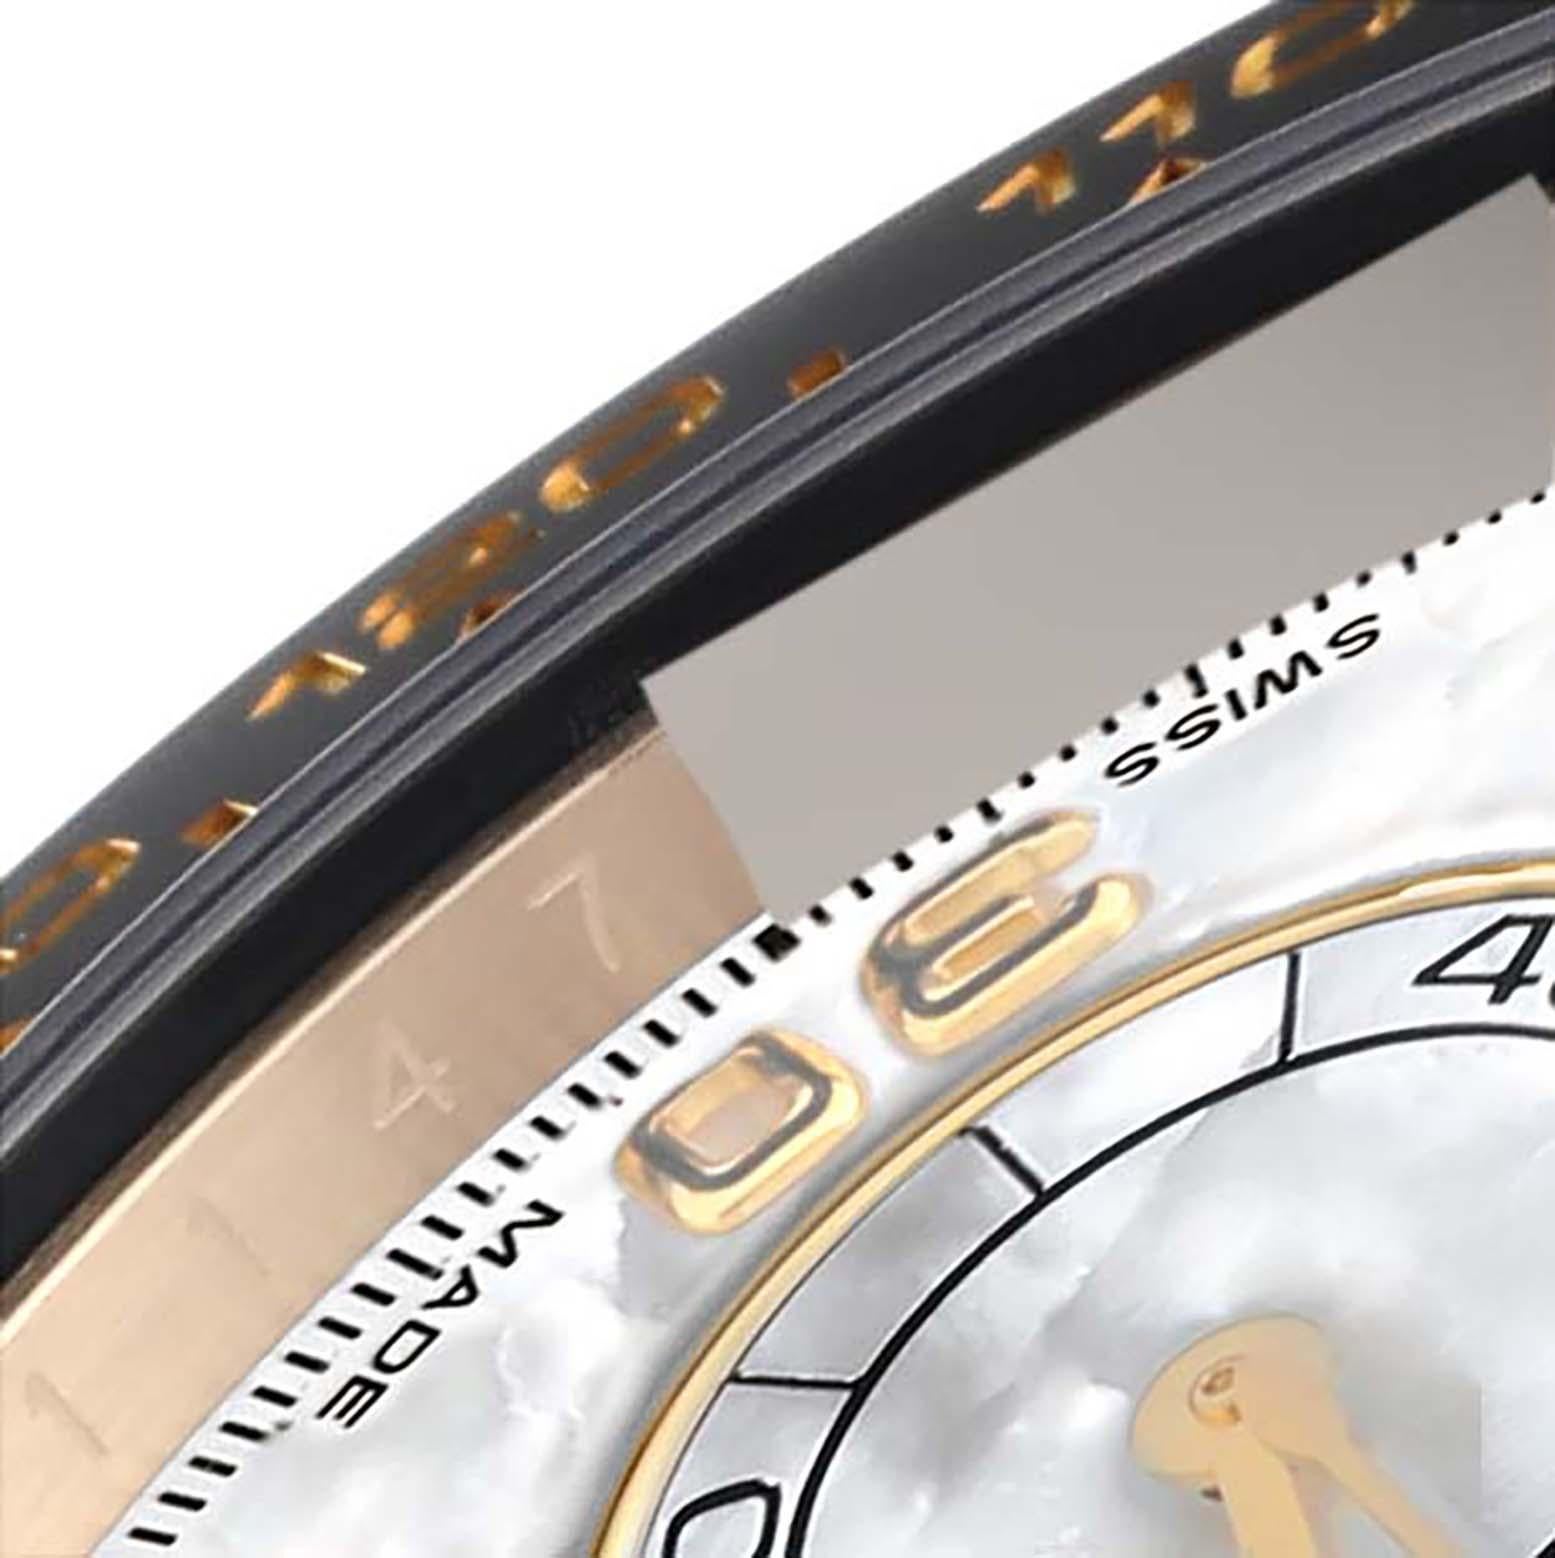 Rolex Daytona Yellow Gold Mother Of Pearl Diamond Dial Mens Watch 116518 Box Card. Mouvement automatique à remontage automatique, officiellement certifié chronomètre. Fonction chronographe. Boîtier en or jaune 18 carats de 40,0 mm de diamètre. 